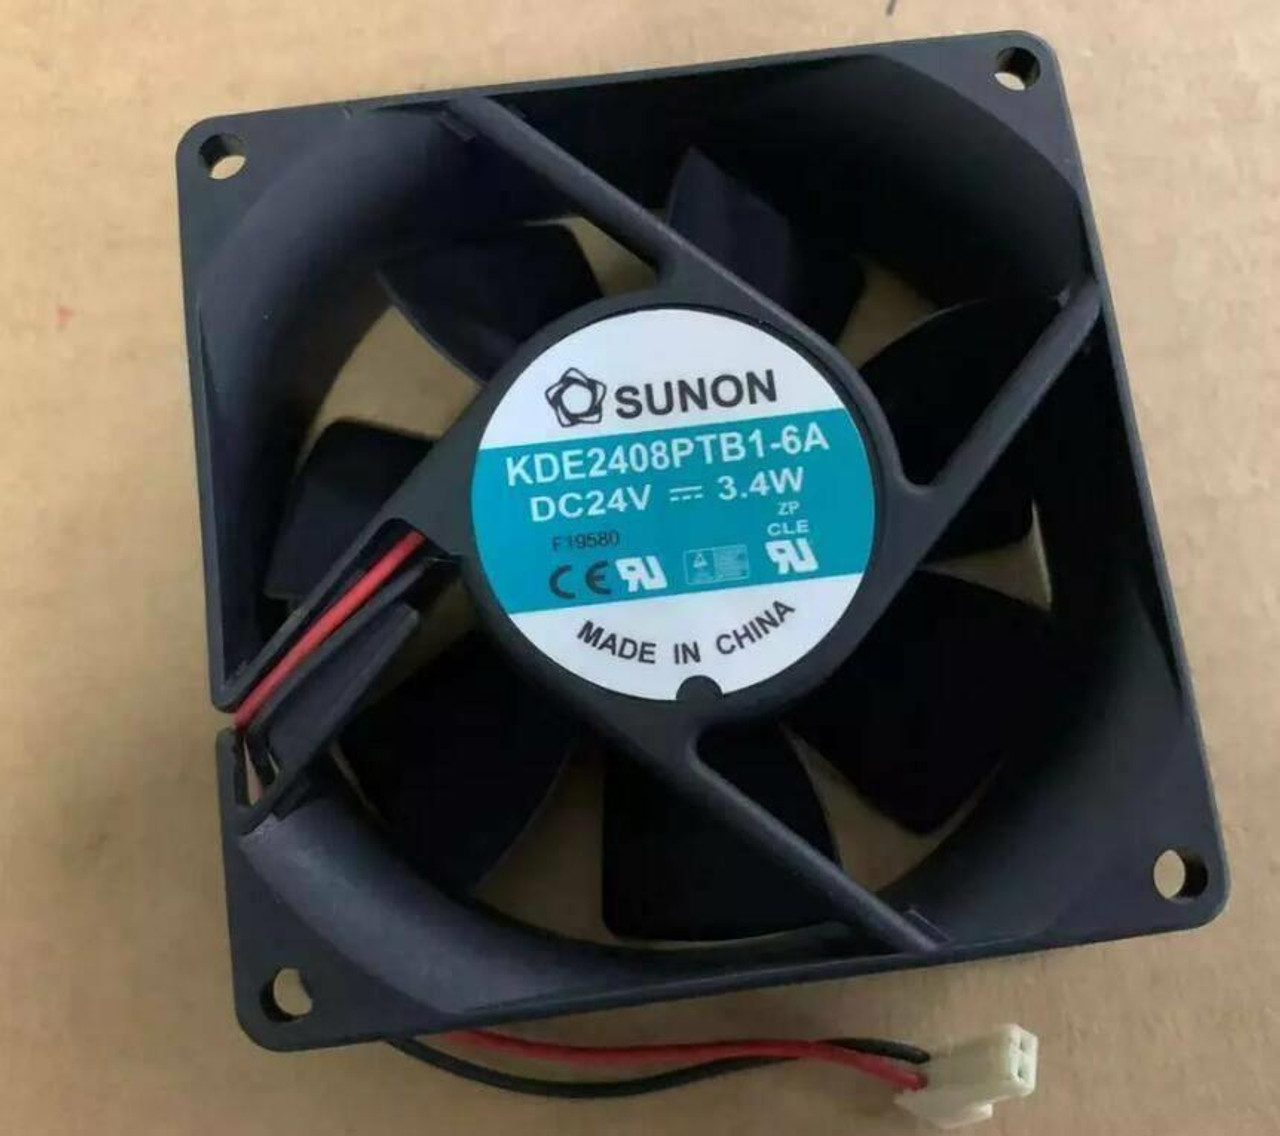 KDE2408PTB1-6A Sunon Square Fan DC 24V 3.4-Watts 80x80x25mm